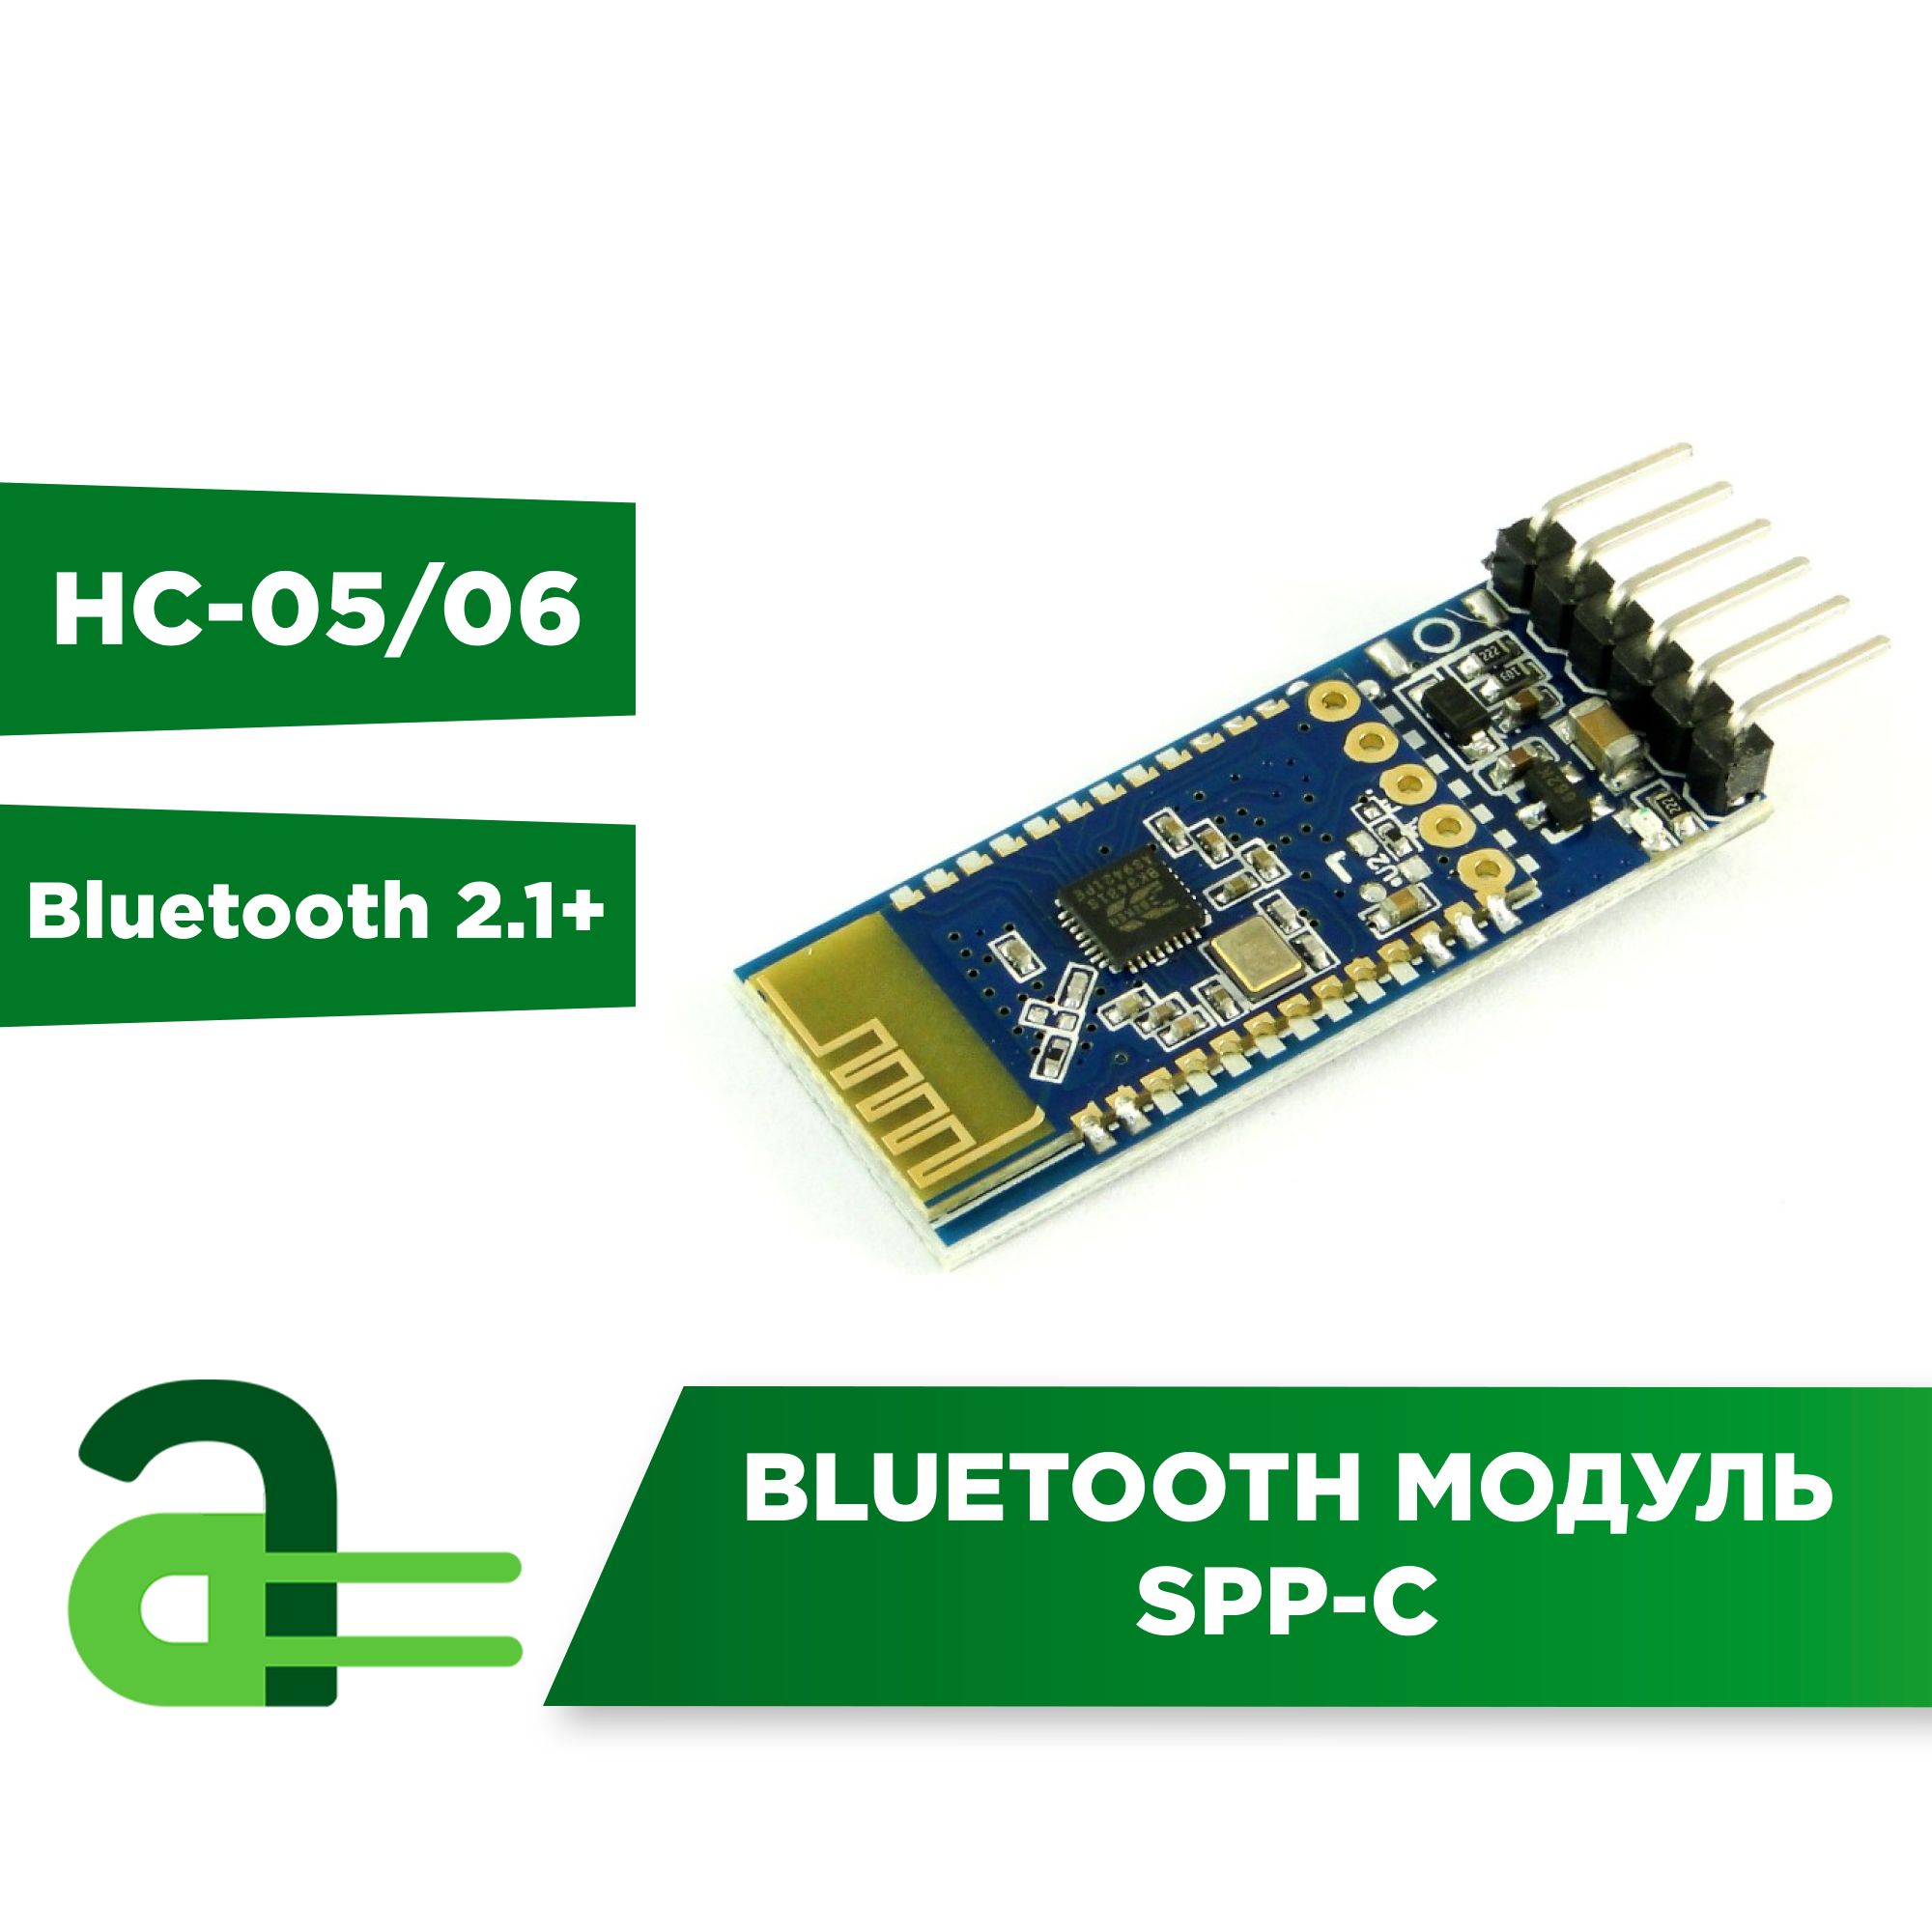 BluetoothмодульSPP-CHC-05/06